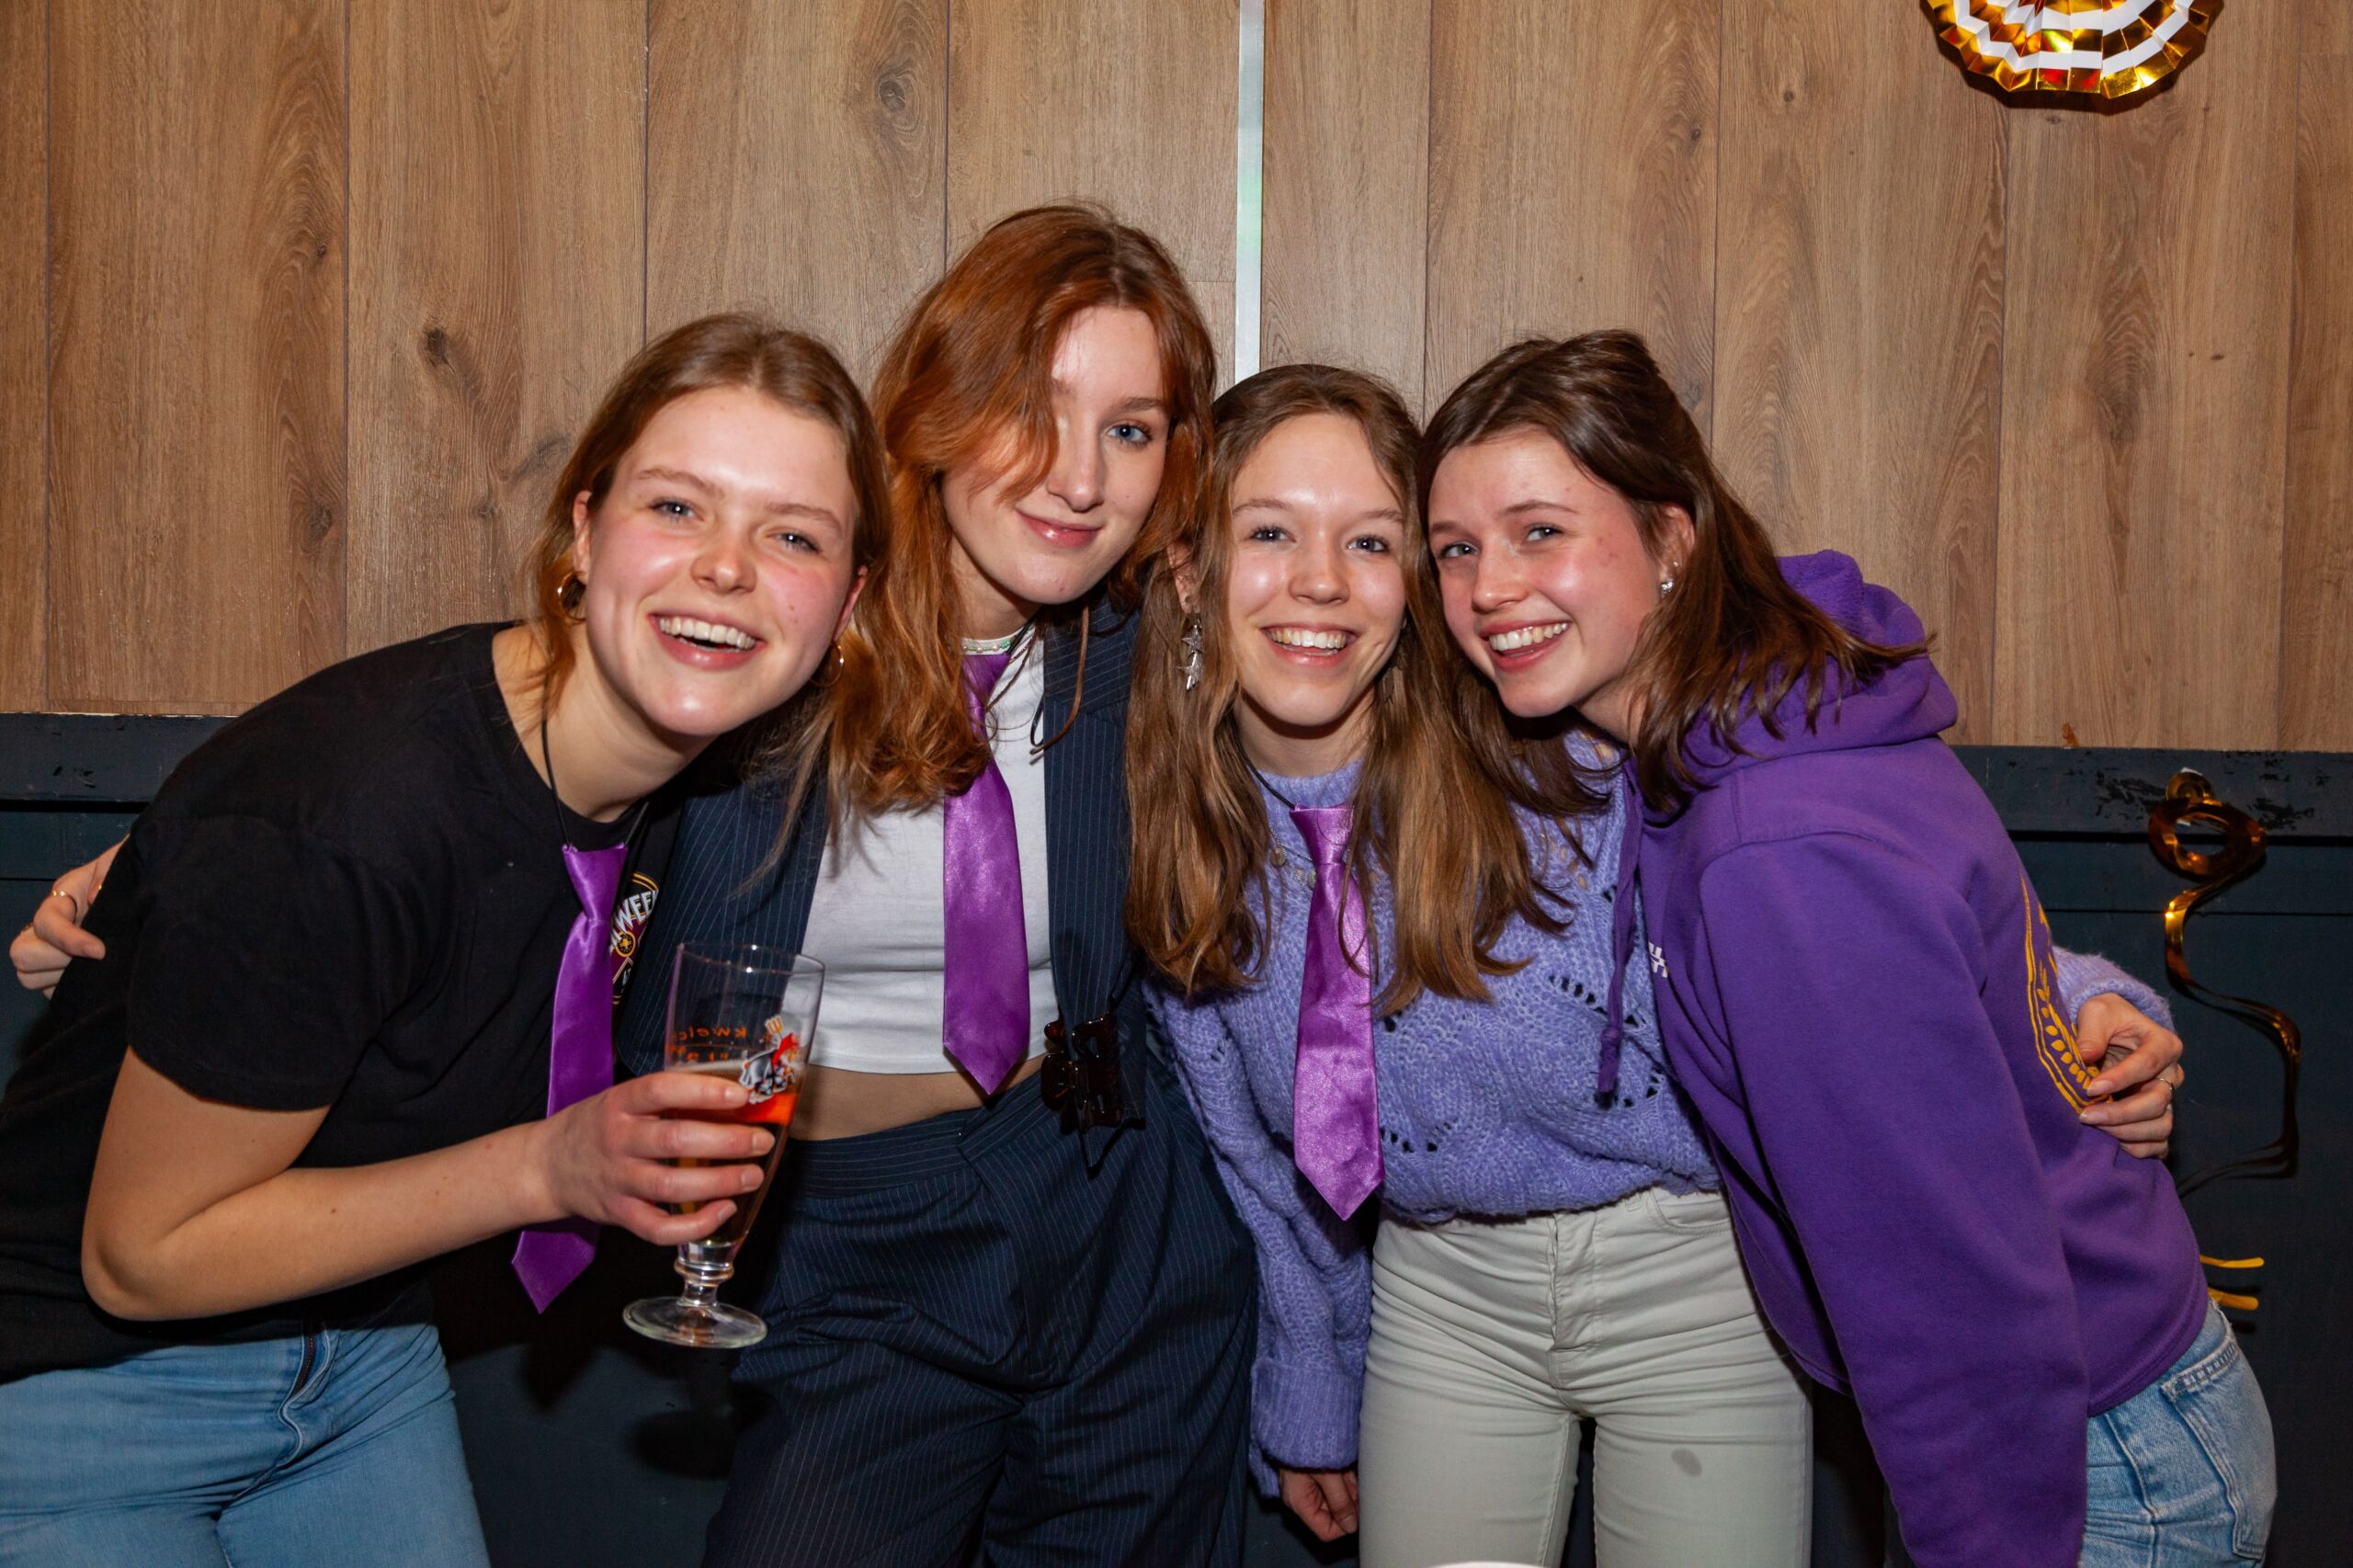 Vier vrouwlijke studenten vieren feest, mogelijk, dragen hun dispuutskleding. Ze houden drankjes vast en glimlachen hartelijk in een gezellige omgeving binnenshuis.